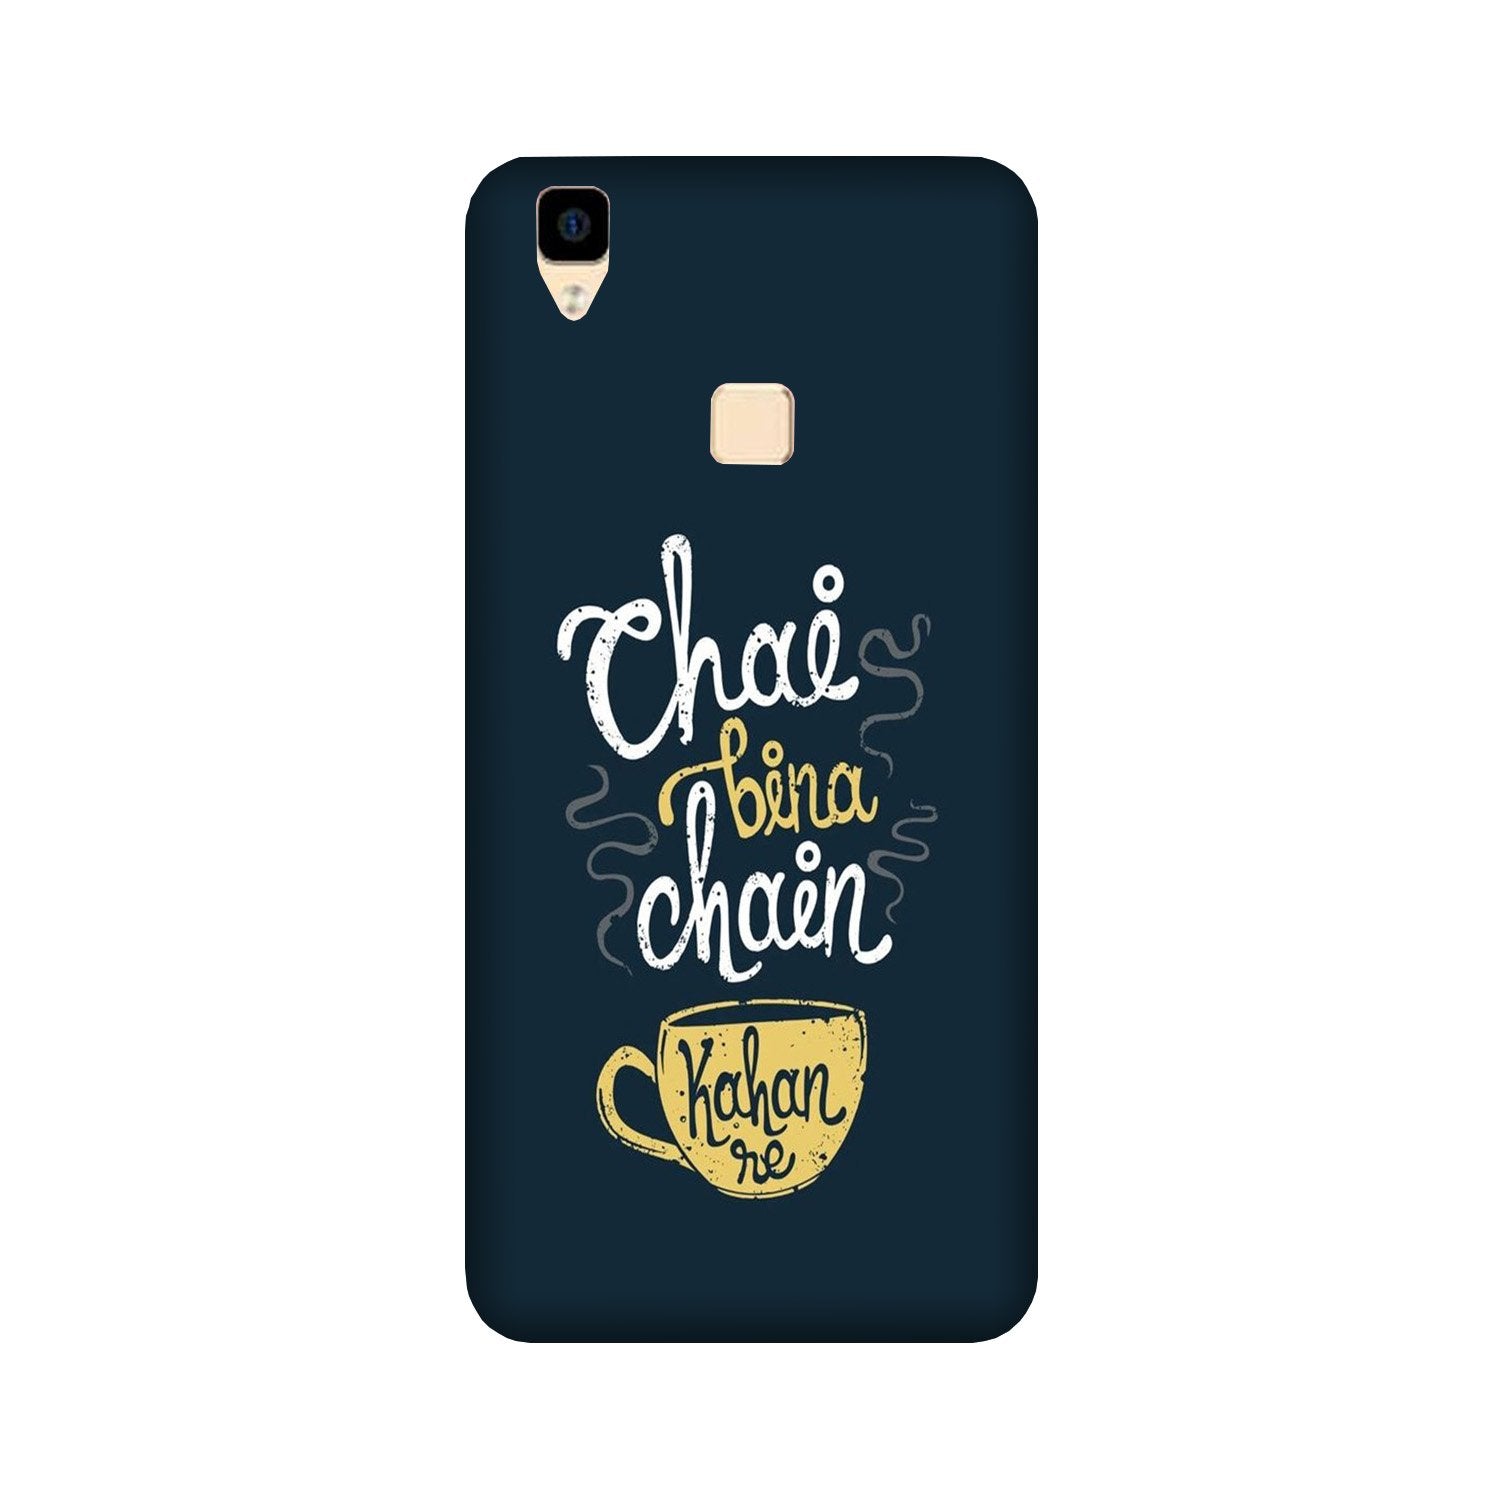 Chai Bina Chain Kahan Case for Vivo V3 Max(Design - 144)